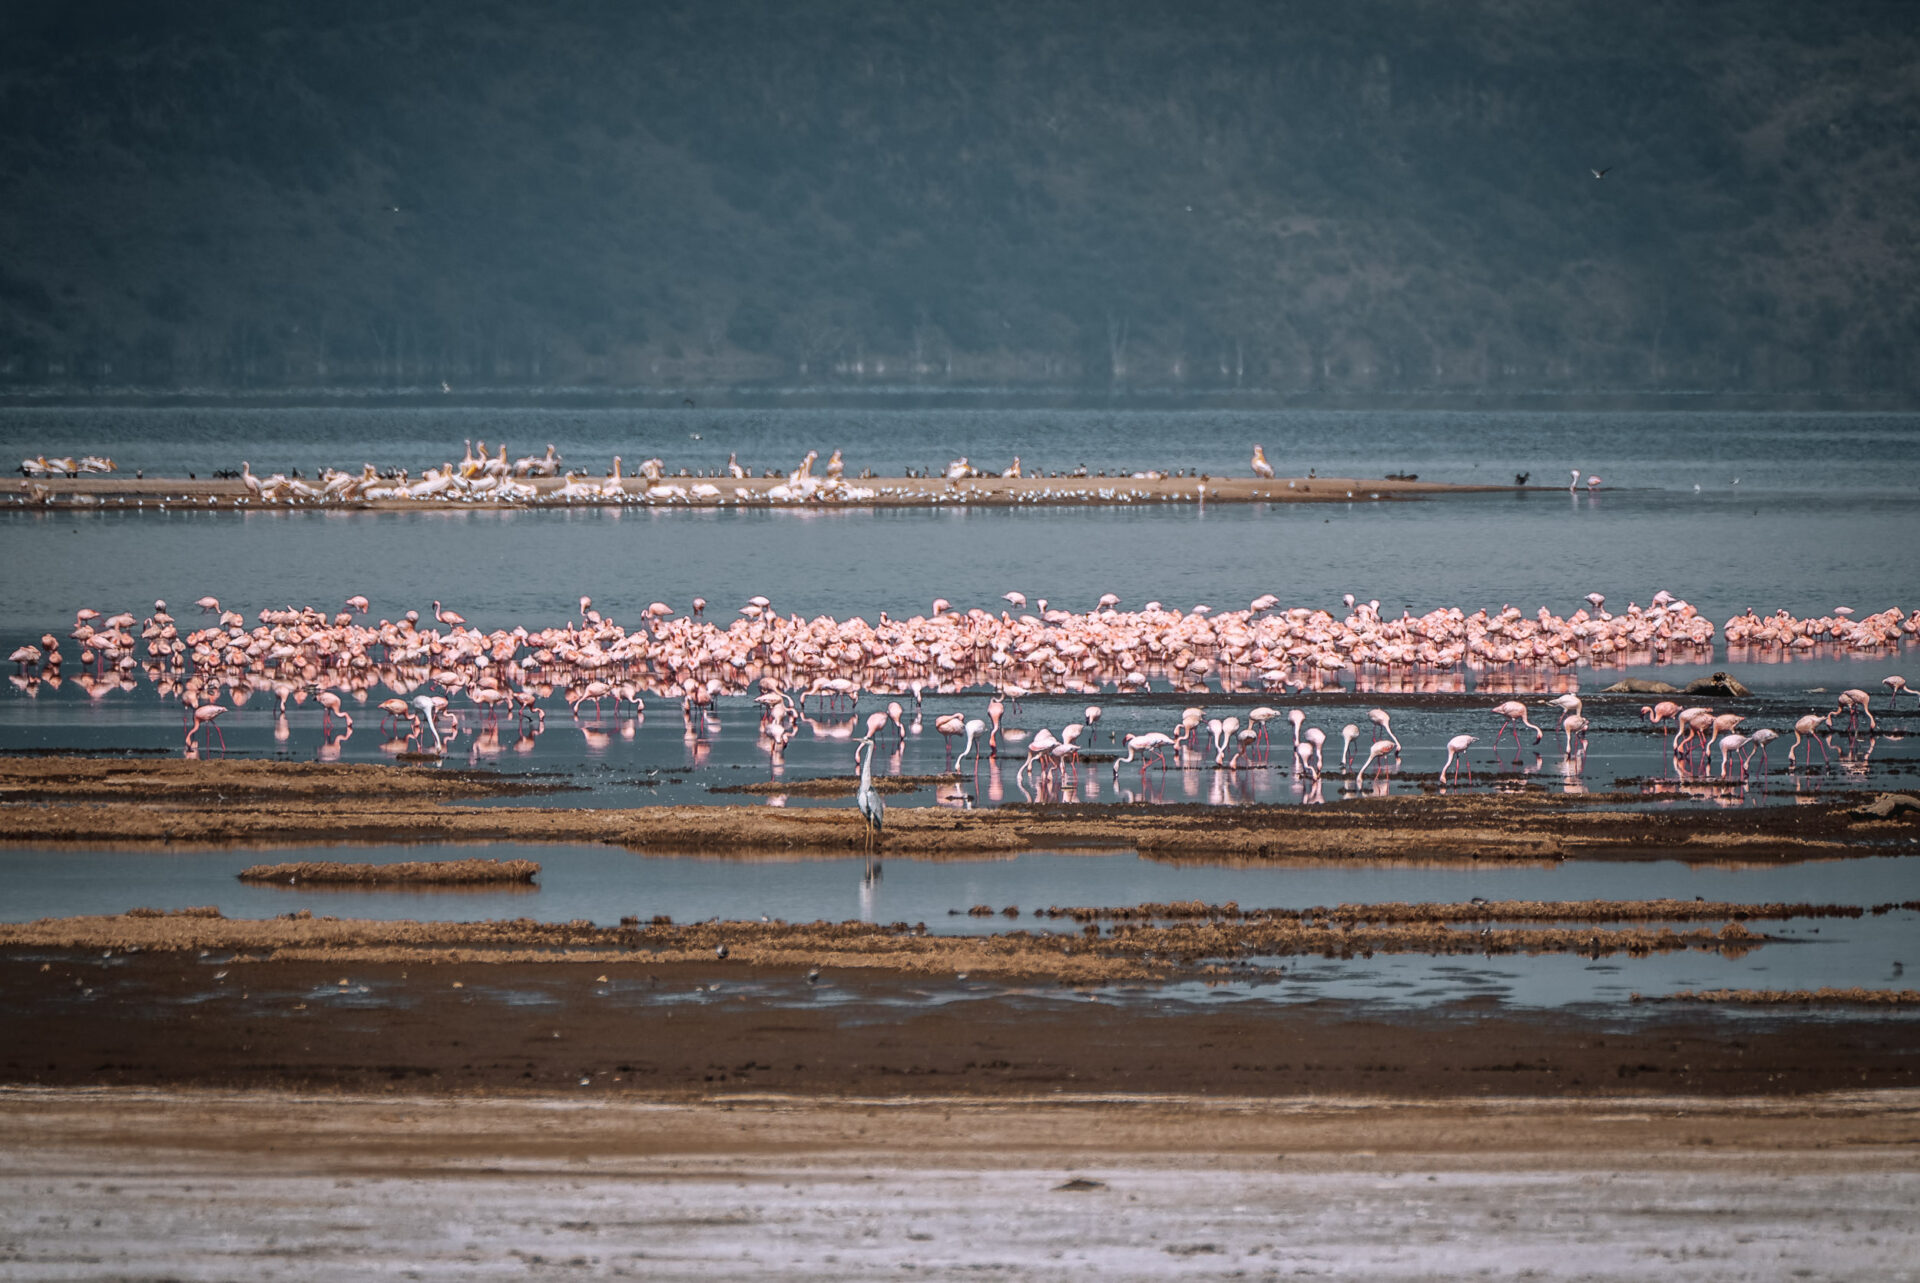 Kenya Lake Nakuru National Park flamingo 06821